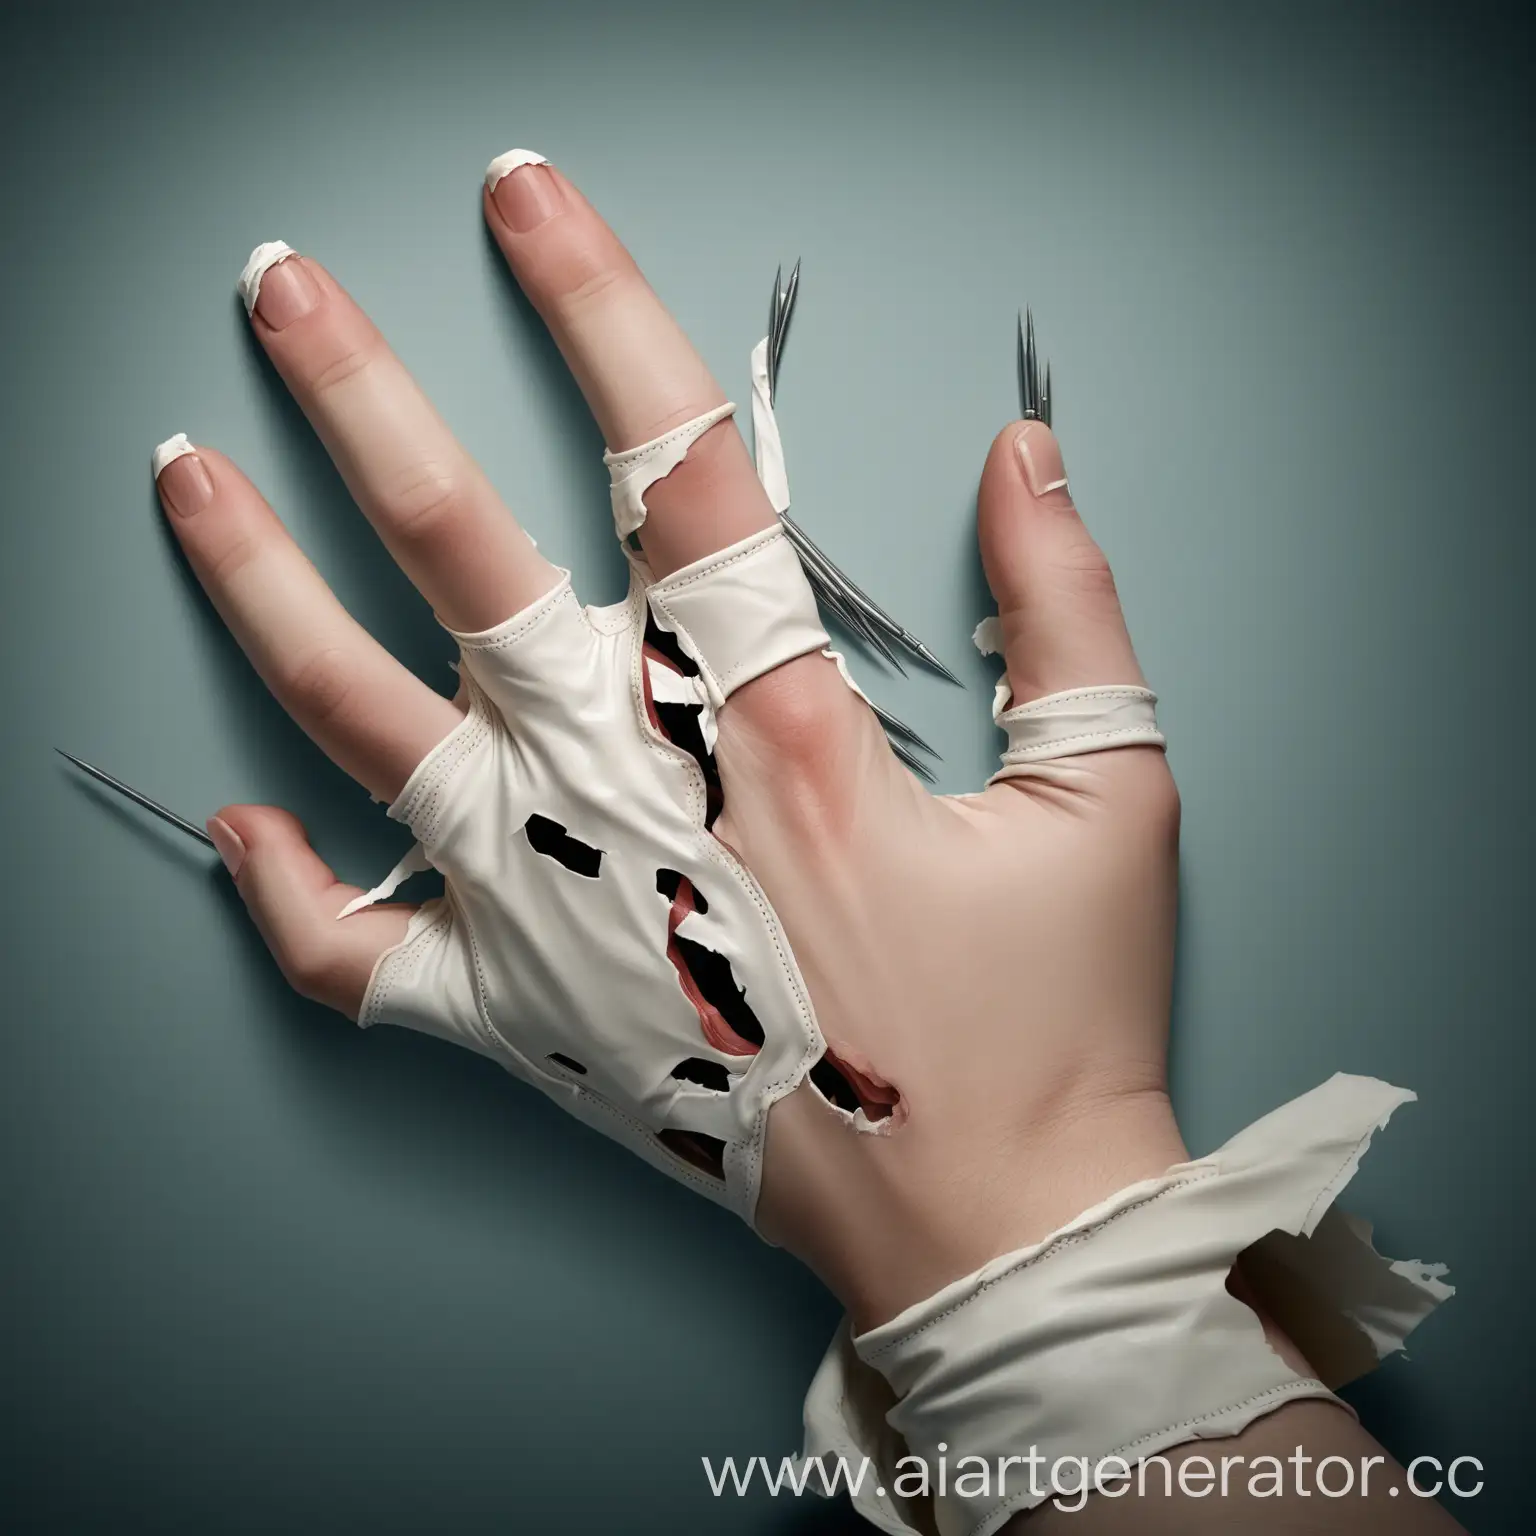 Порванная ногтями медицинская перчатка.